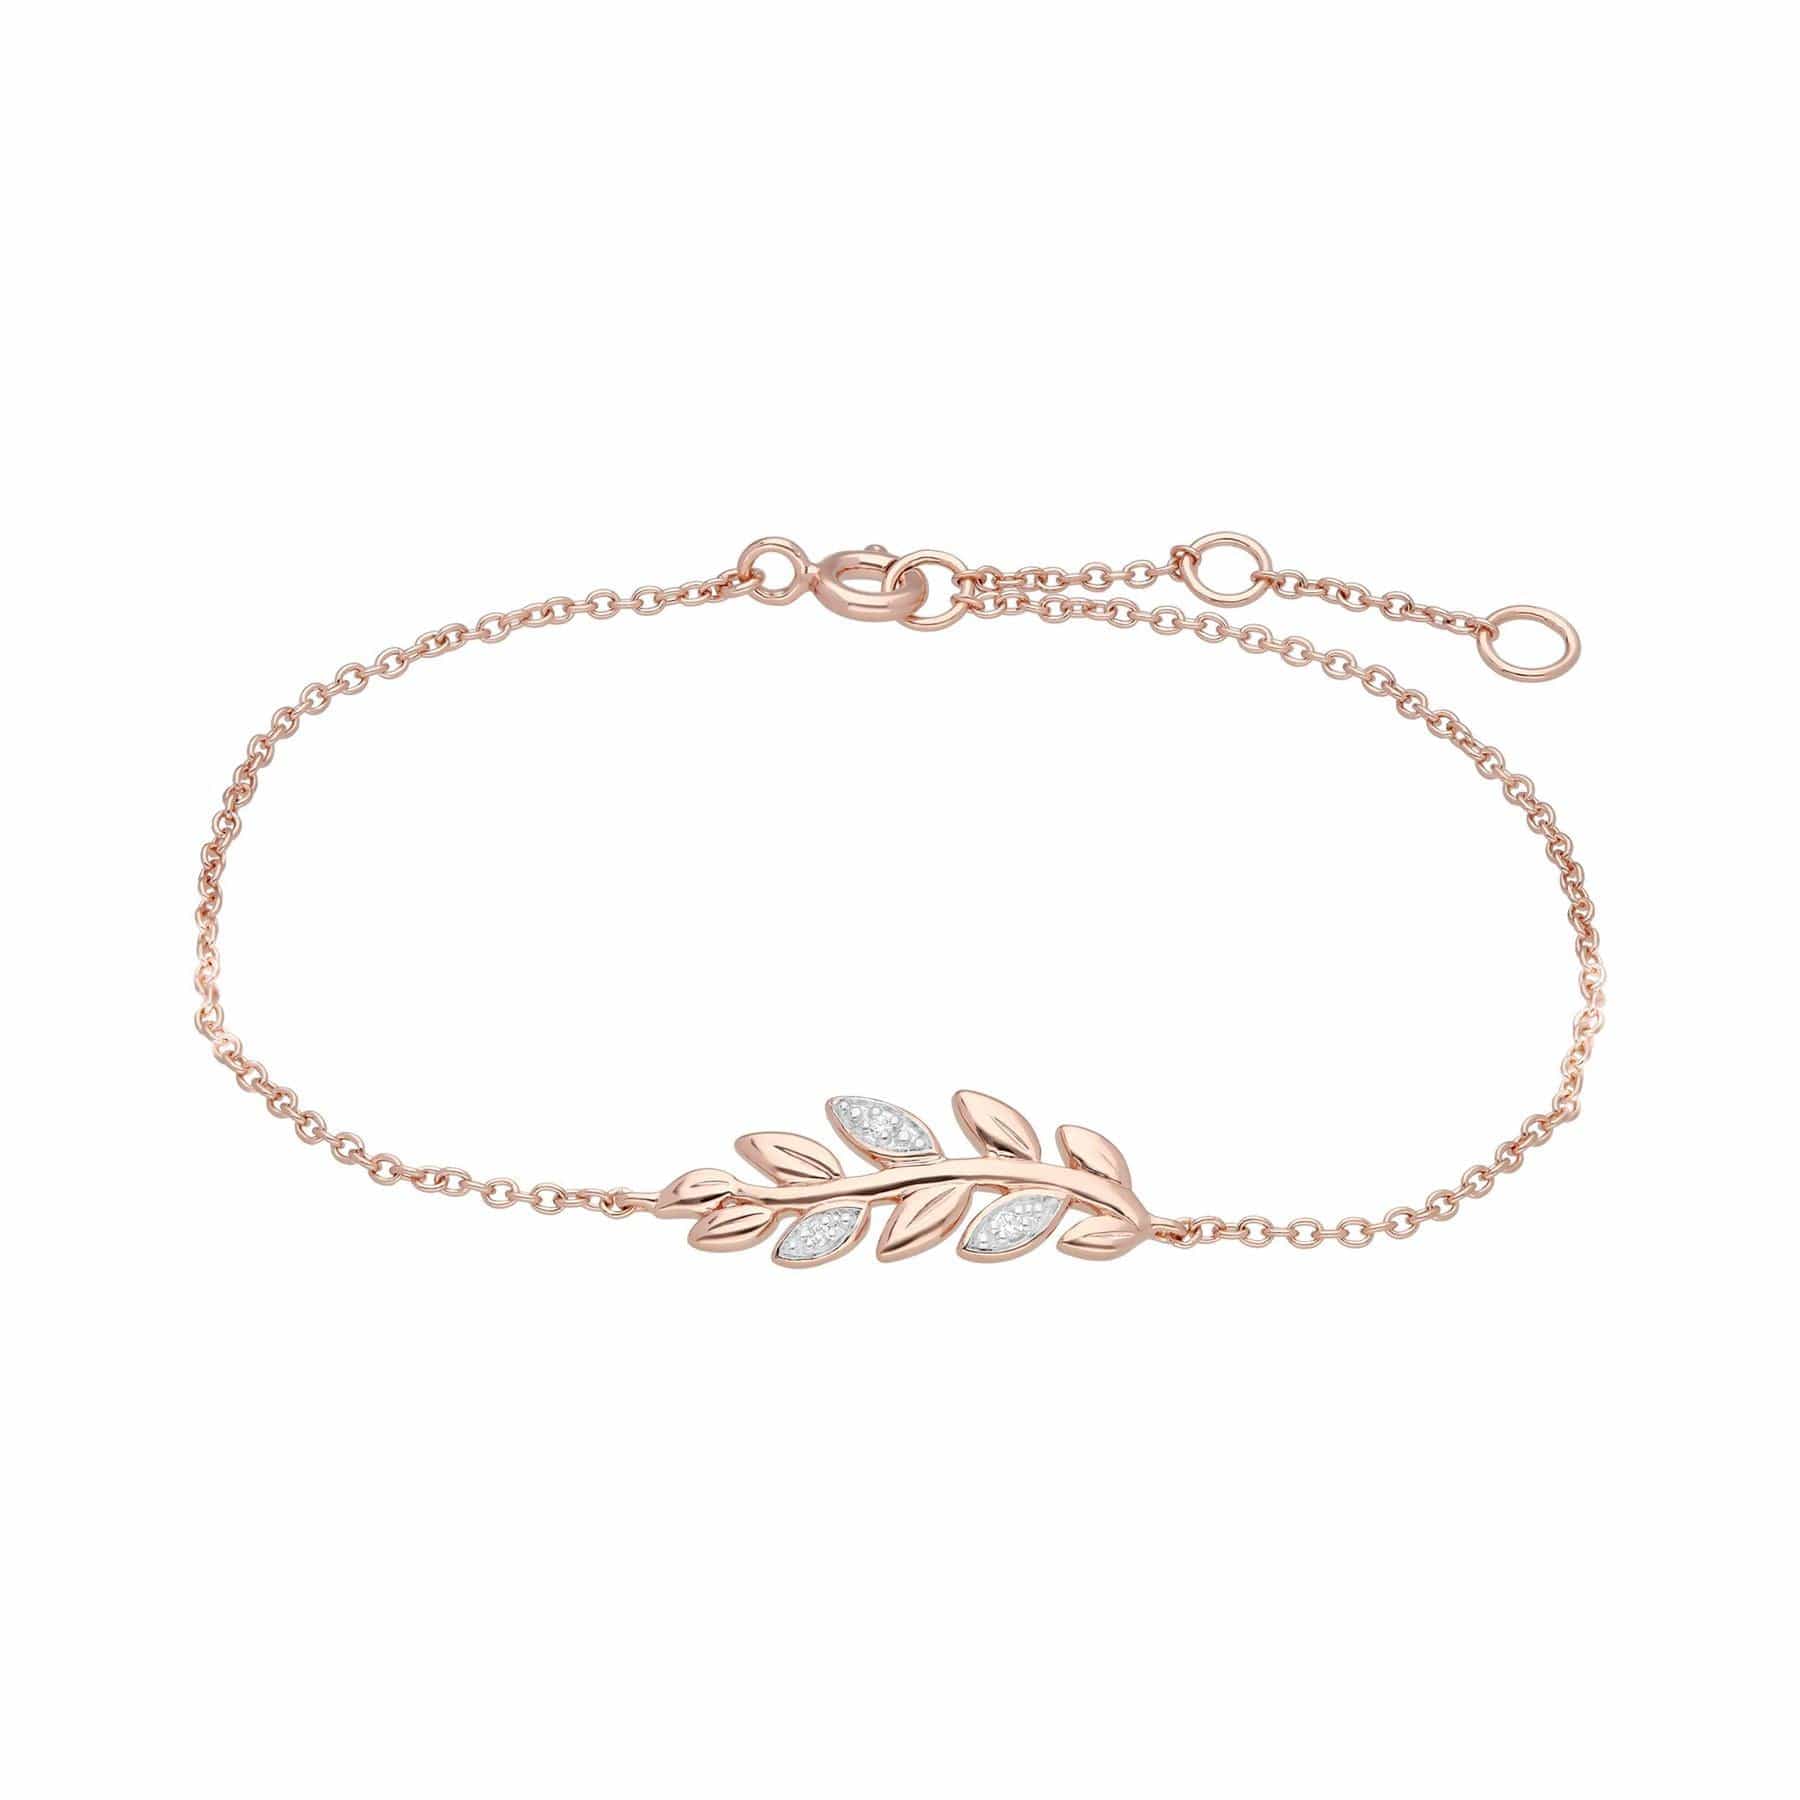 191N0231019-191L0156029 O Leaf Diamond Necklace & Bracelet Set in 9ct Rose Gold 5